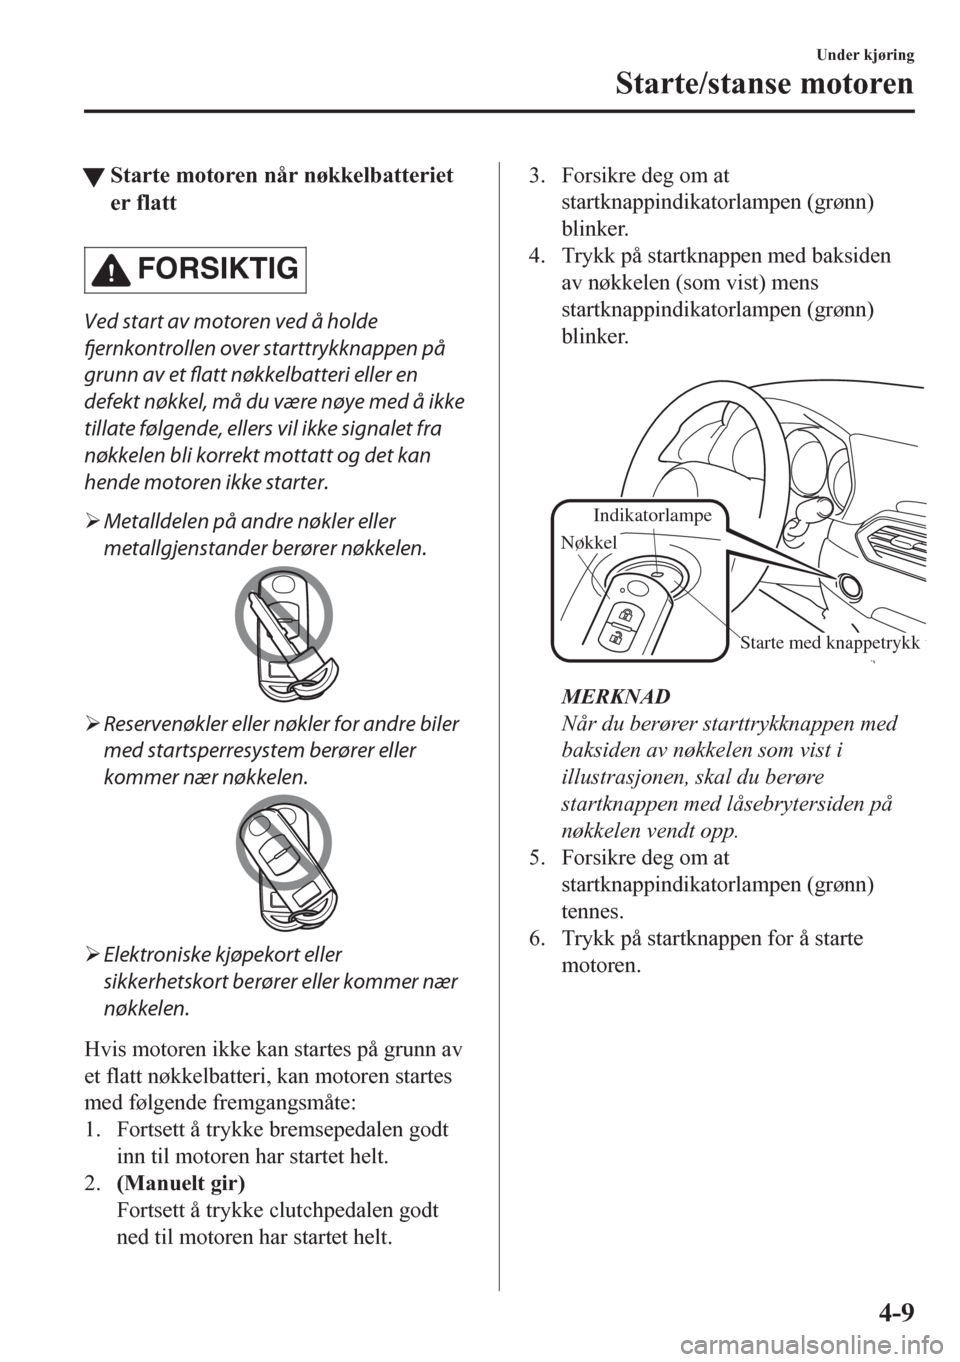 MAZDA MODEL CX-5 2018  Brukerhåndbok (in Norwegian) tStarte motoren når nøkkelbatteriet
er flatt
FORSIKTIG
Ved start av motoren ved å holde
fjernkontrollen over starttrykknappen på
grunn av et flatt nøkkelbatteri eller en
defekt nøkkel, må du v�